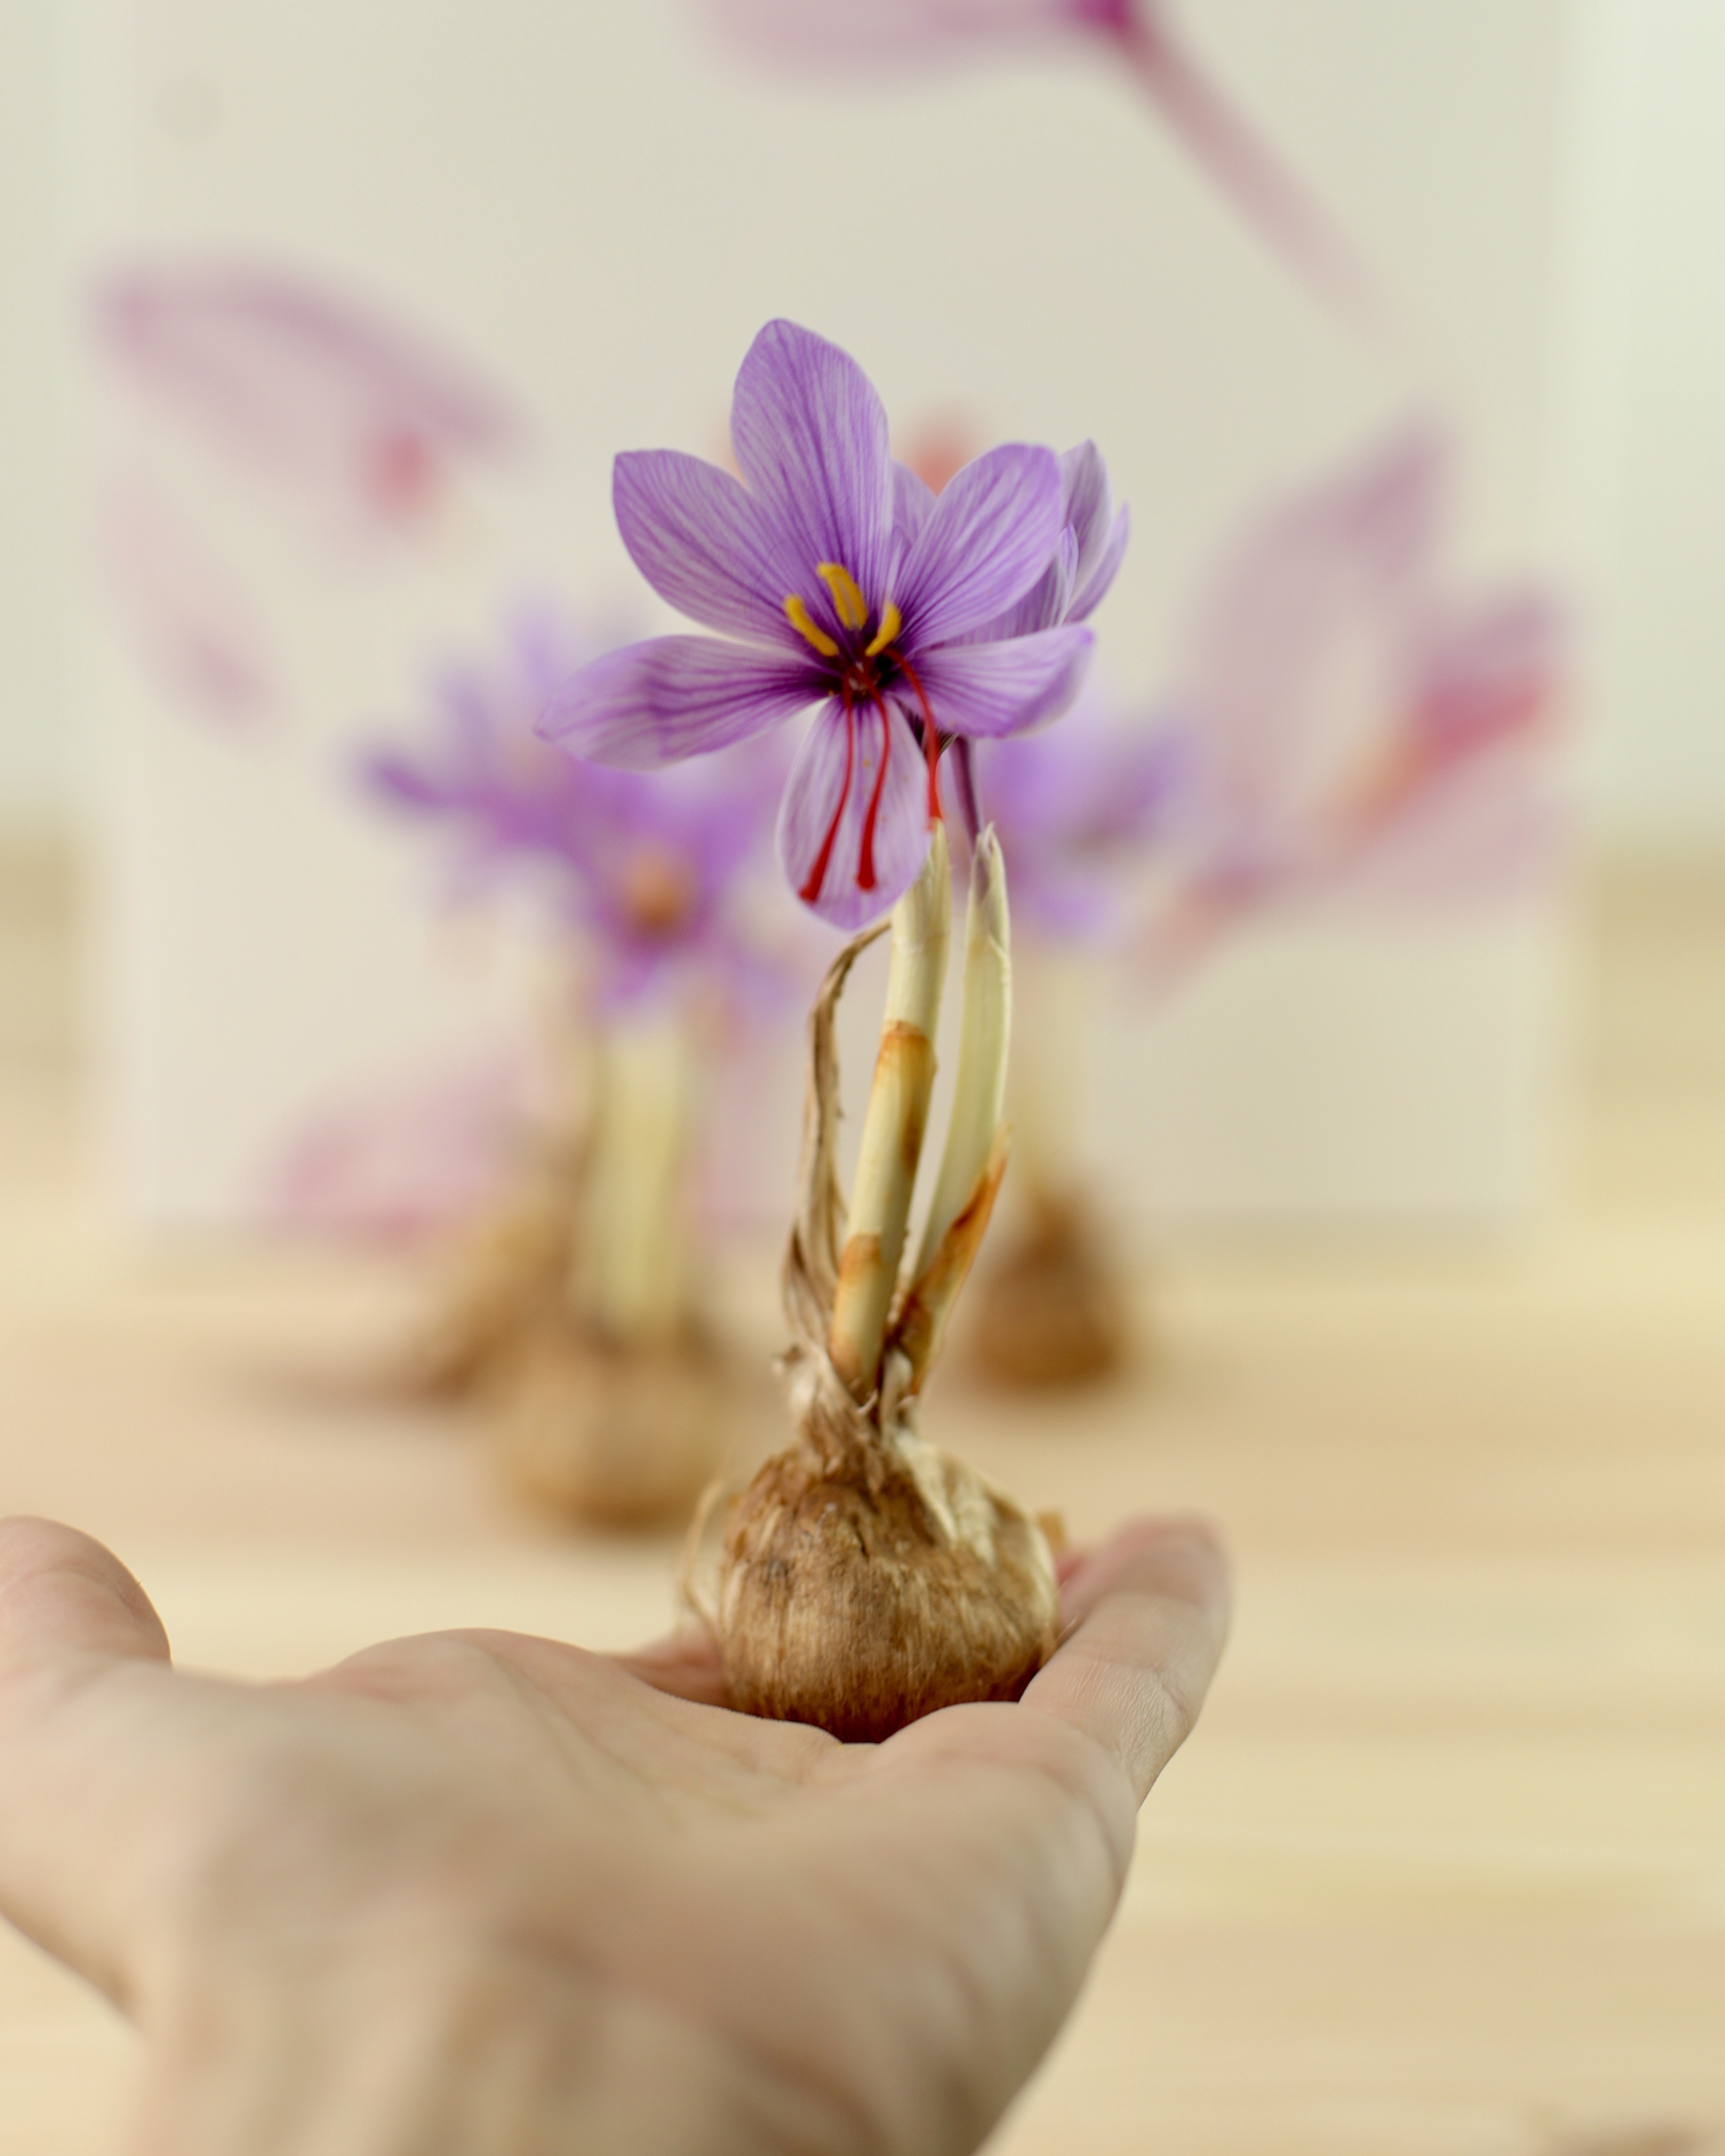 Bulbos de Azafrán cultivados en España Calibre "A" 12u. Crocus sativus - La Melguiza - Tienda online de Azafrán, productos gourmet y con azafrán.